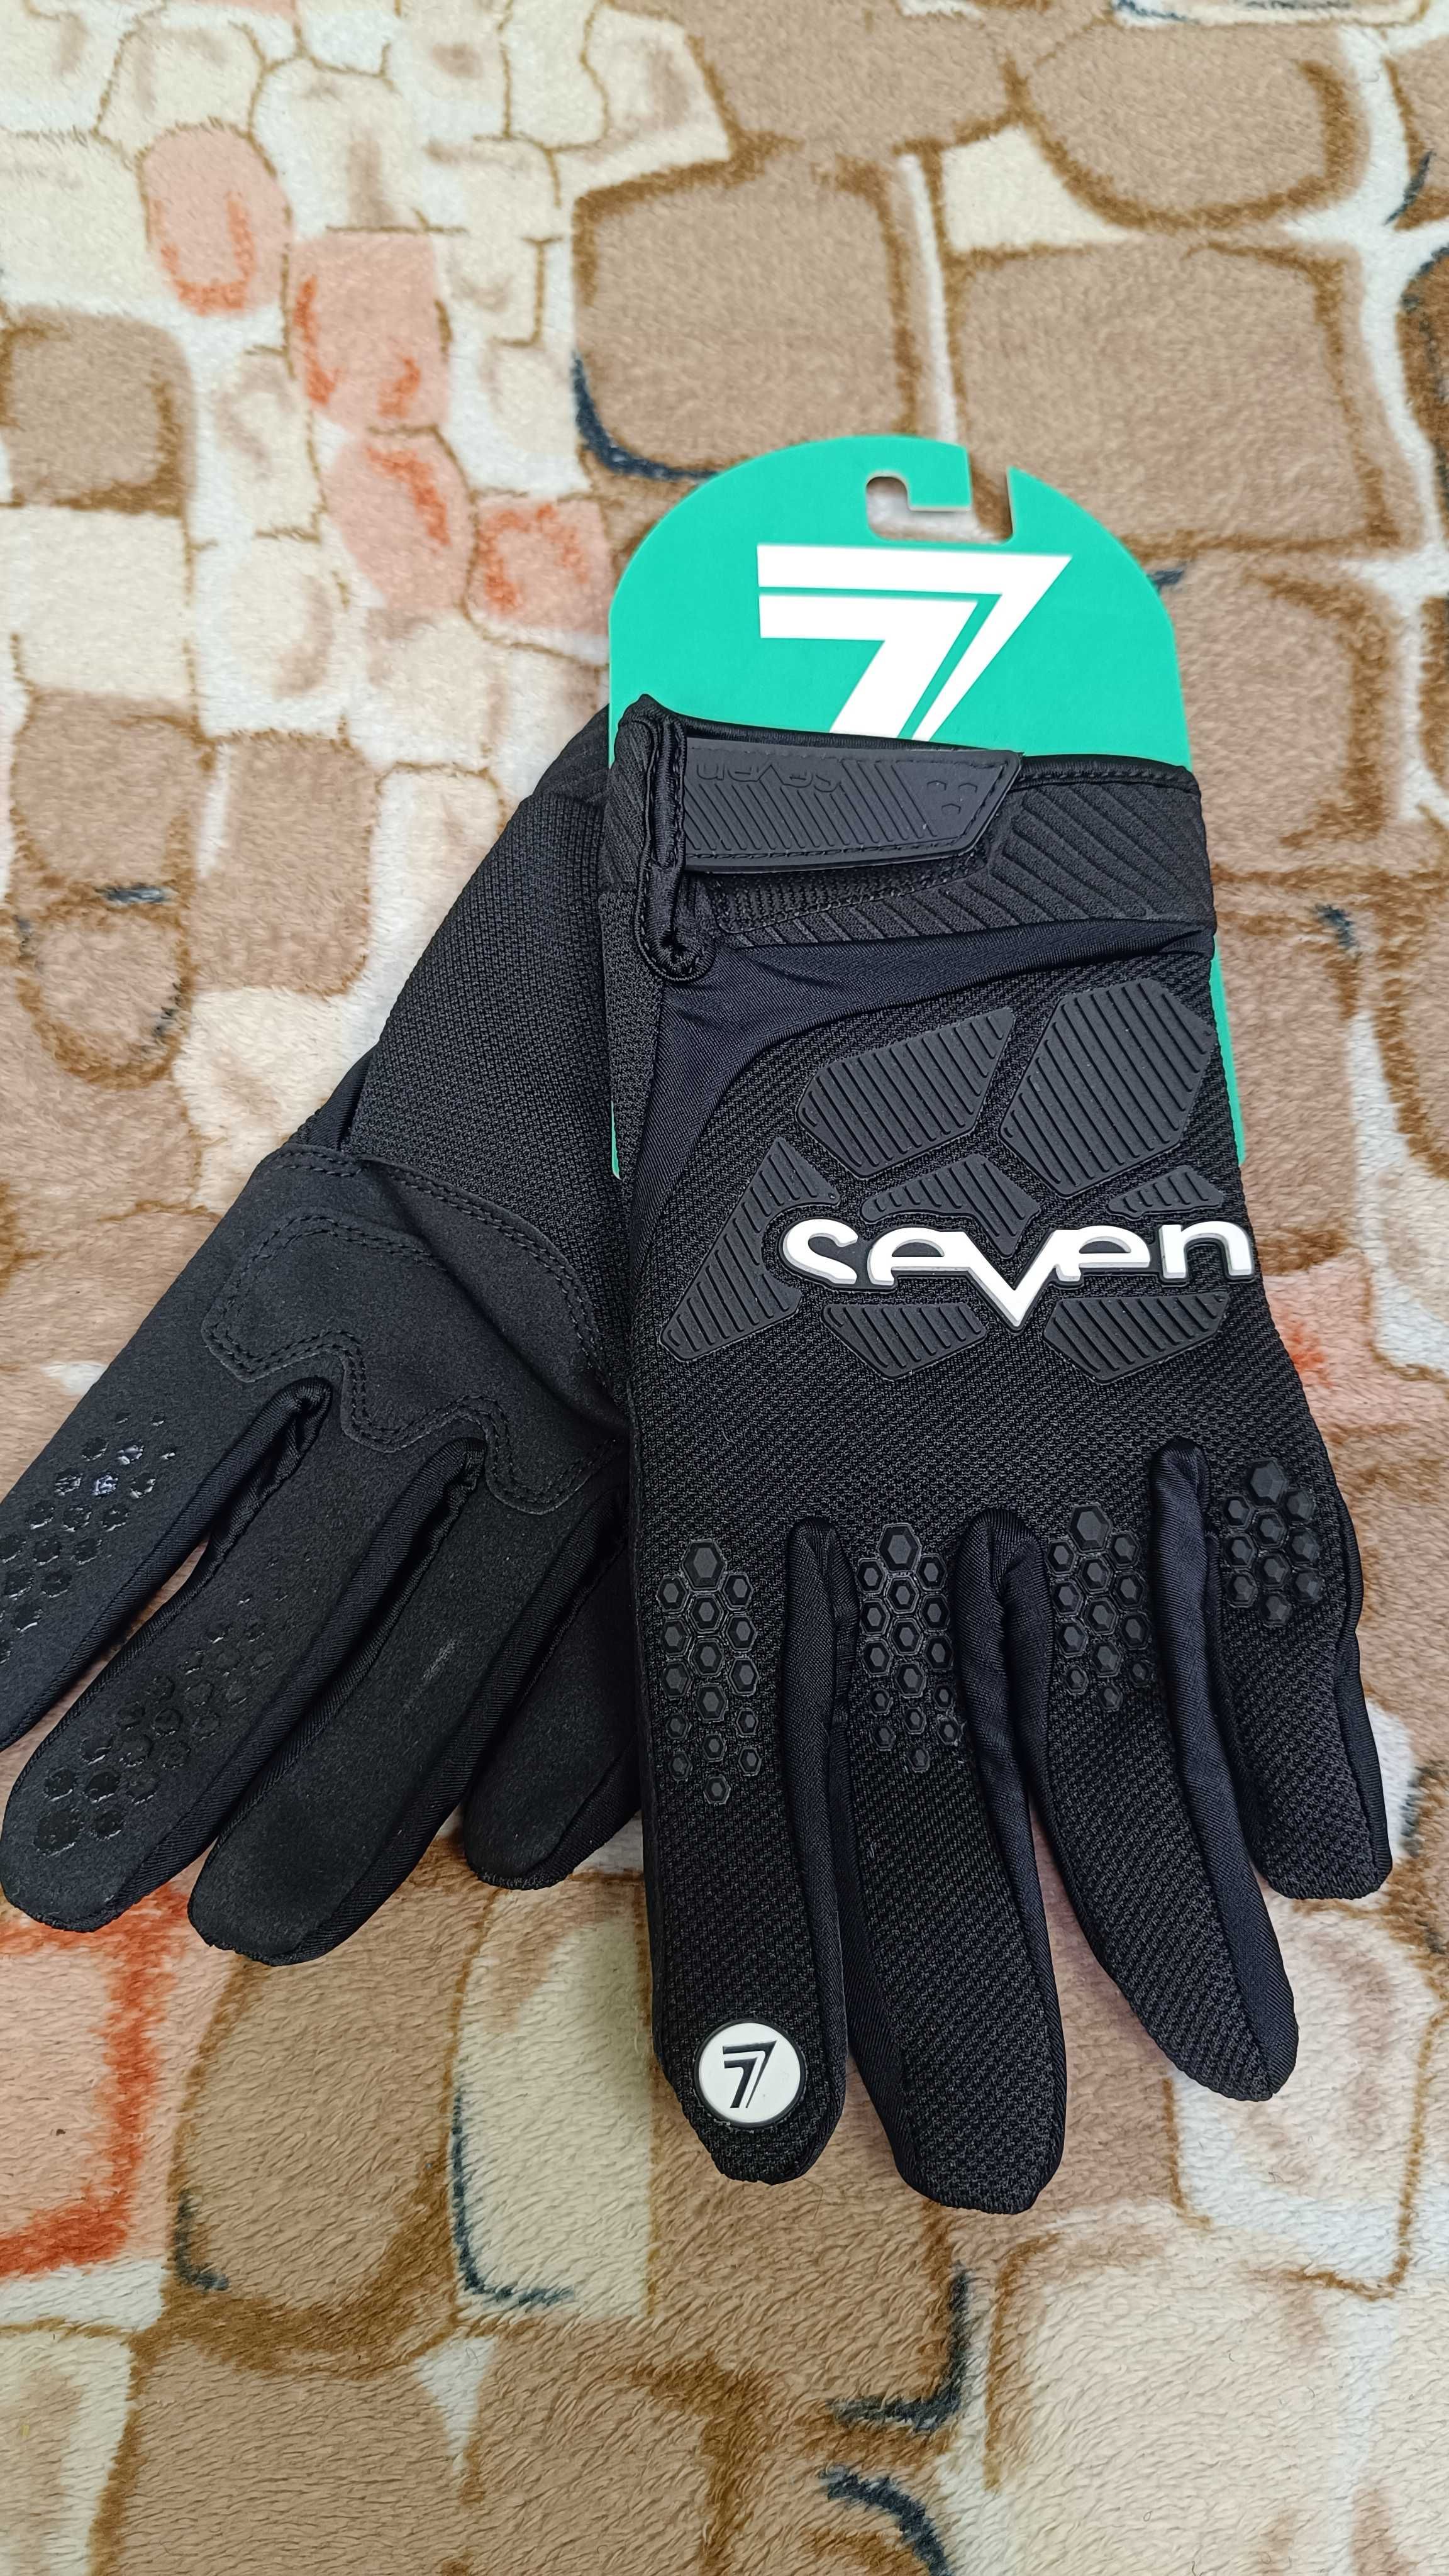 Рукавиці перчатки на велосипед Seven gloves вело мото